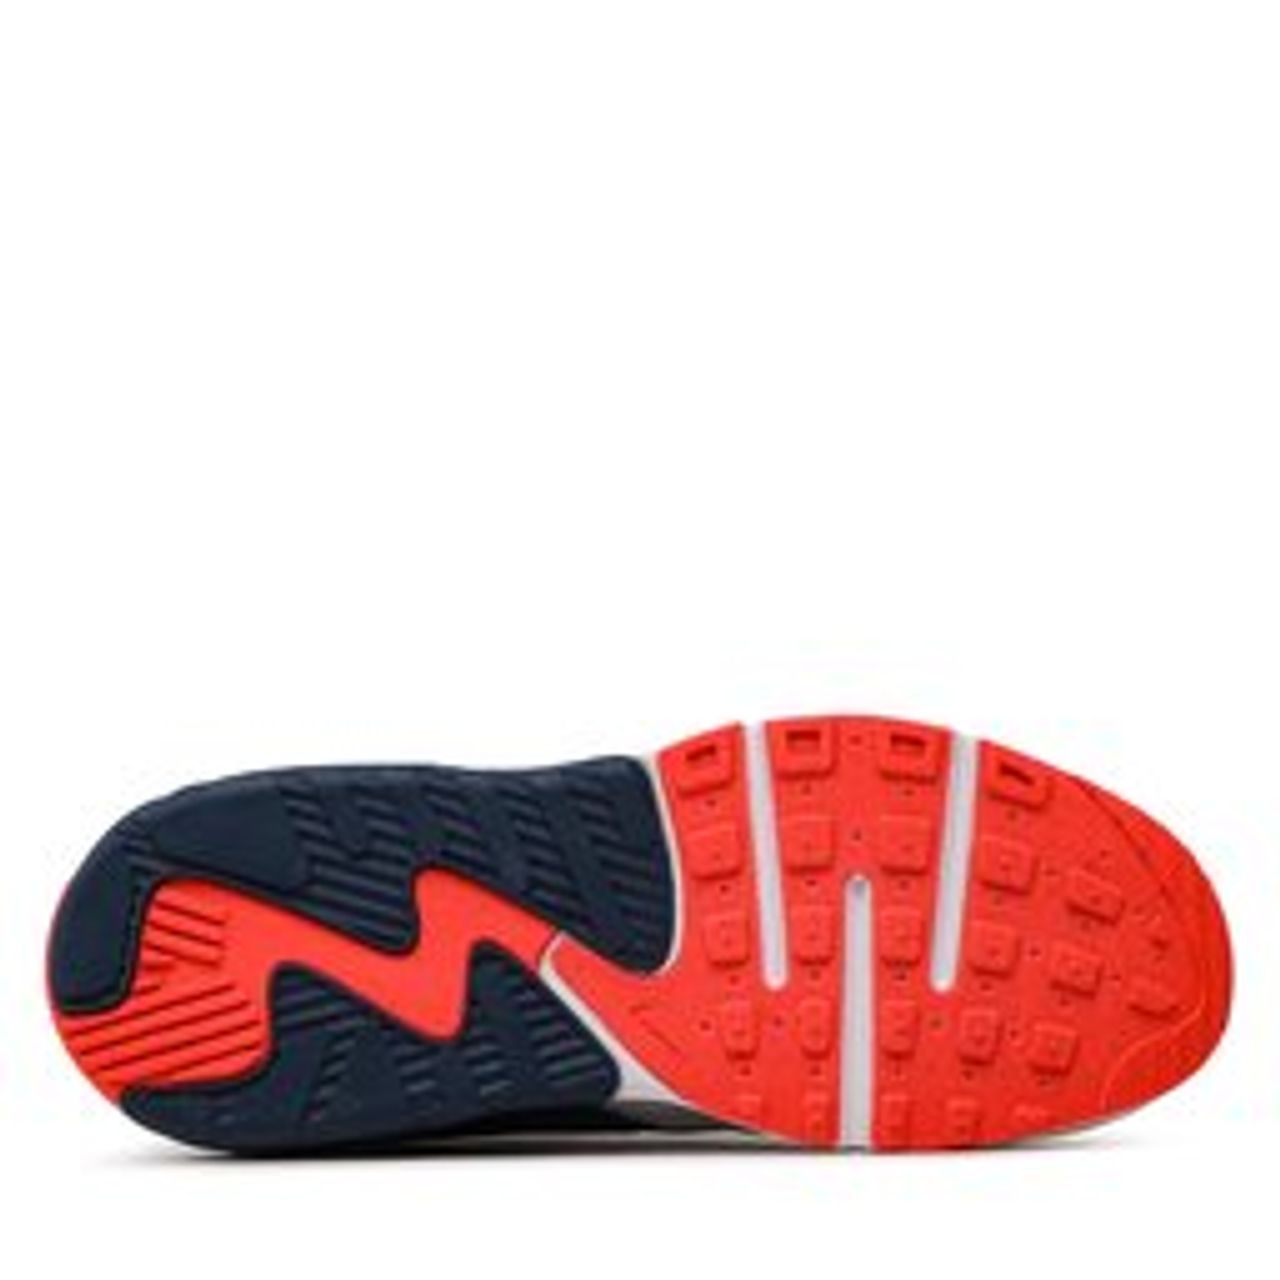 Schuhe Nike Air Max Excee (Gs) CD6894 113 Summit White/Bright Crimson